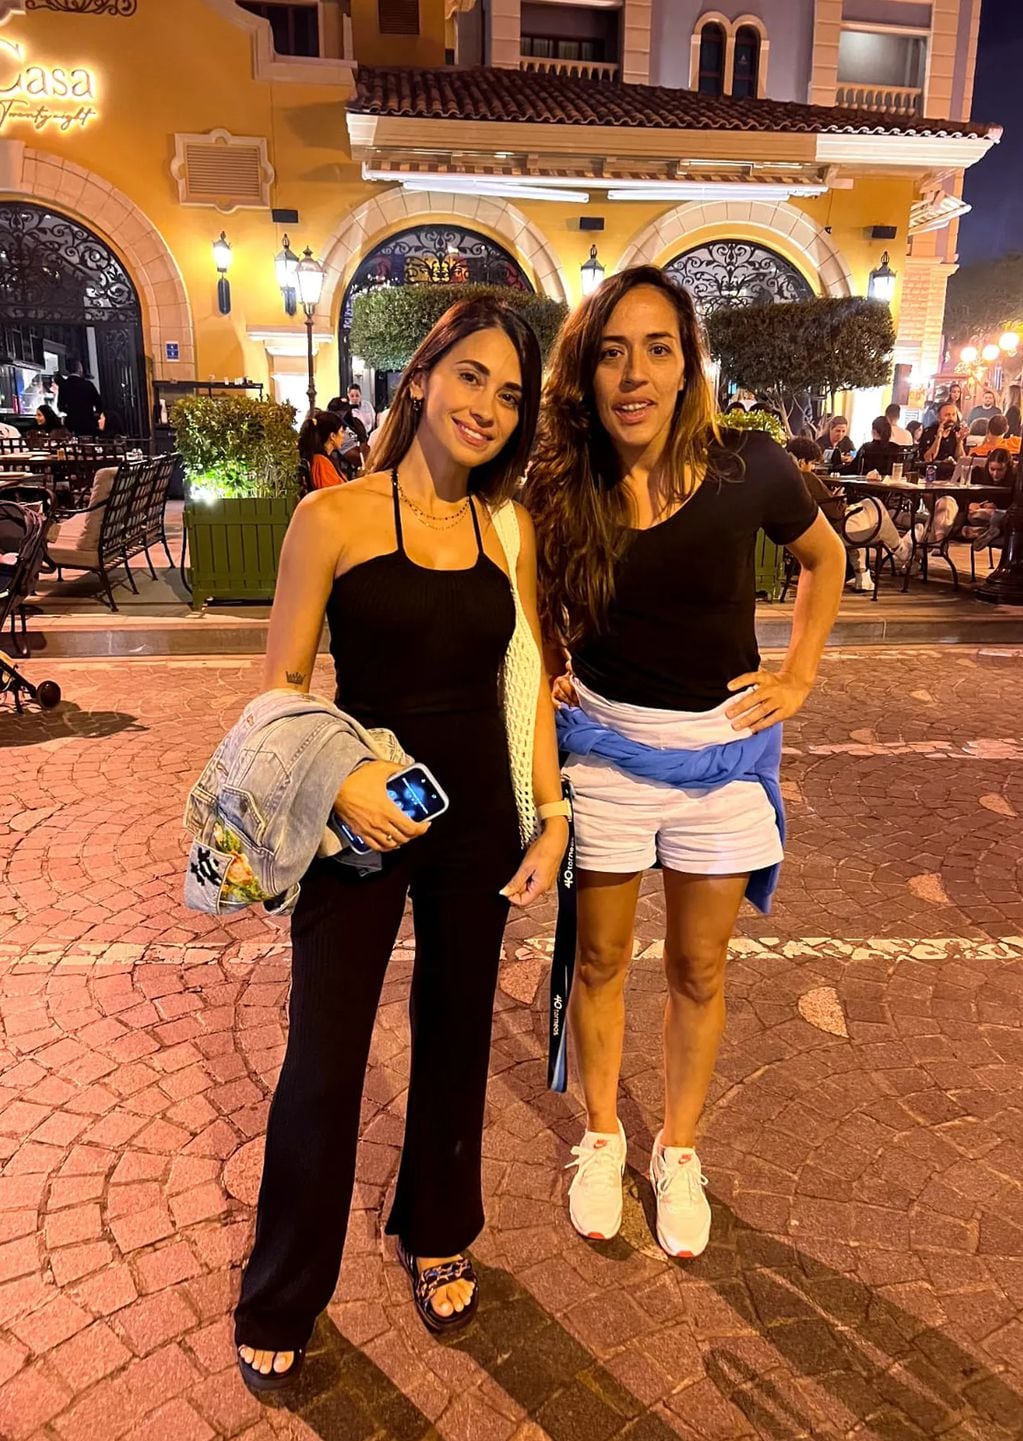 Antonela Rocuzzo con Luana Viera, una periodista en Qatar que consiguió su foto.